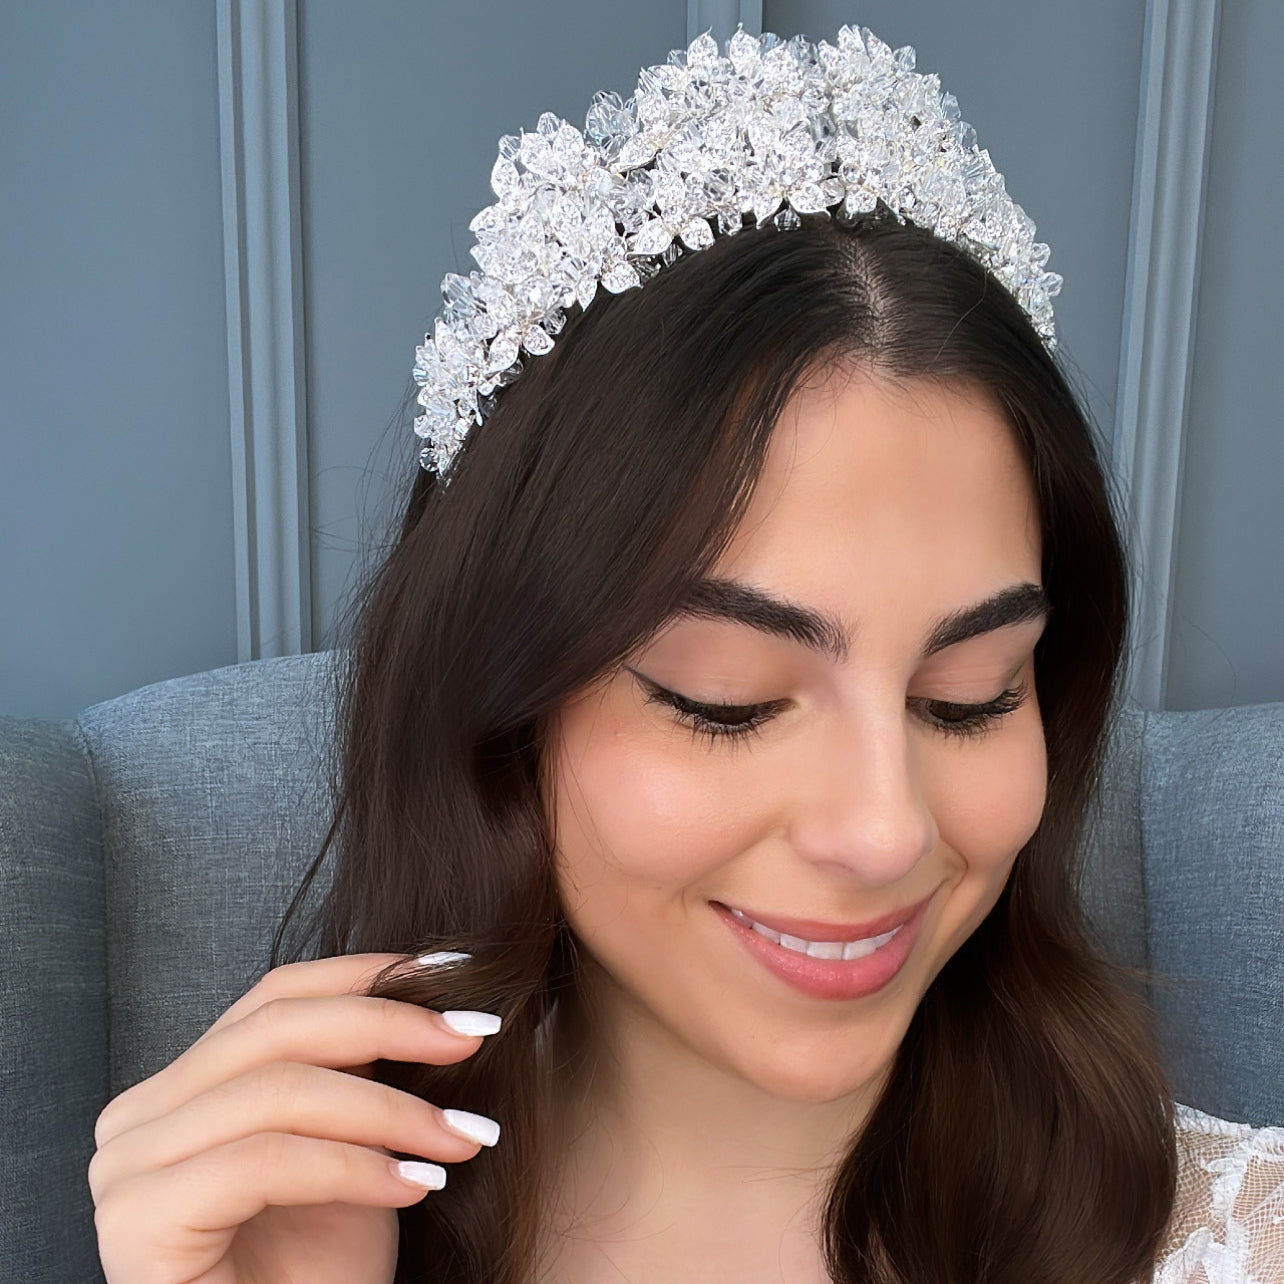 Dani Bridal Crown Hair Accessories - Tiara & Crown  Silver  